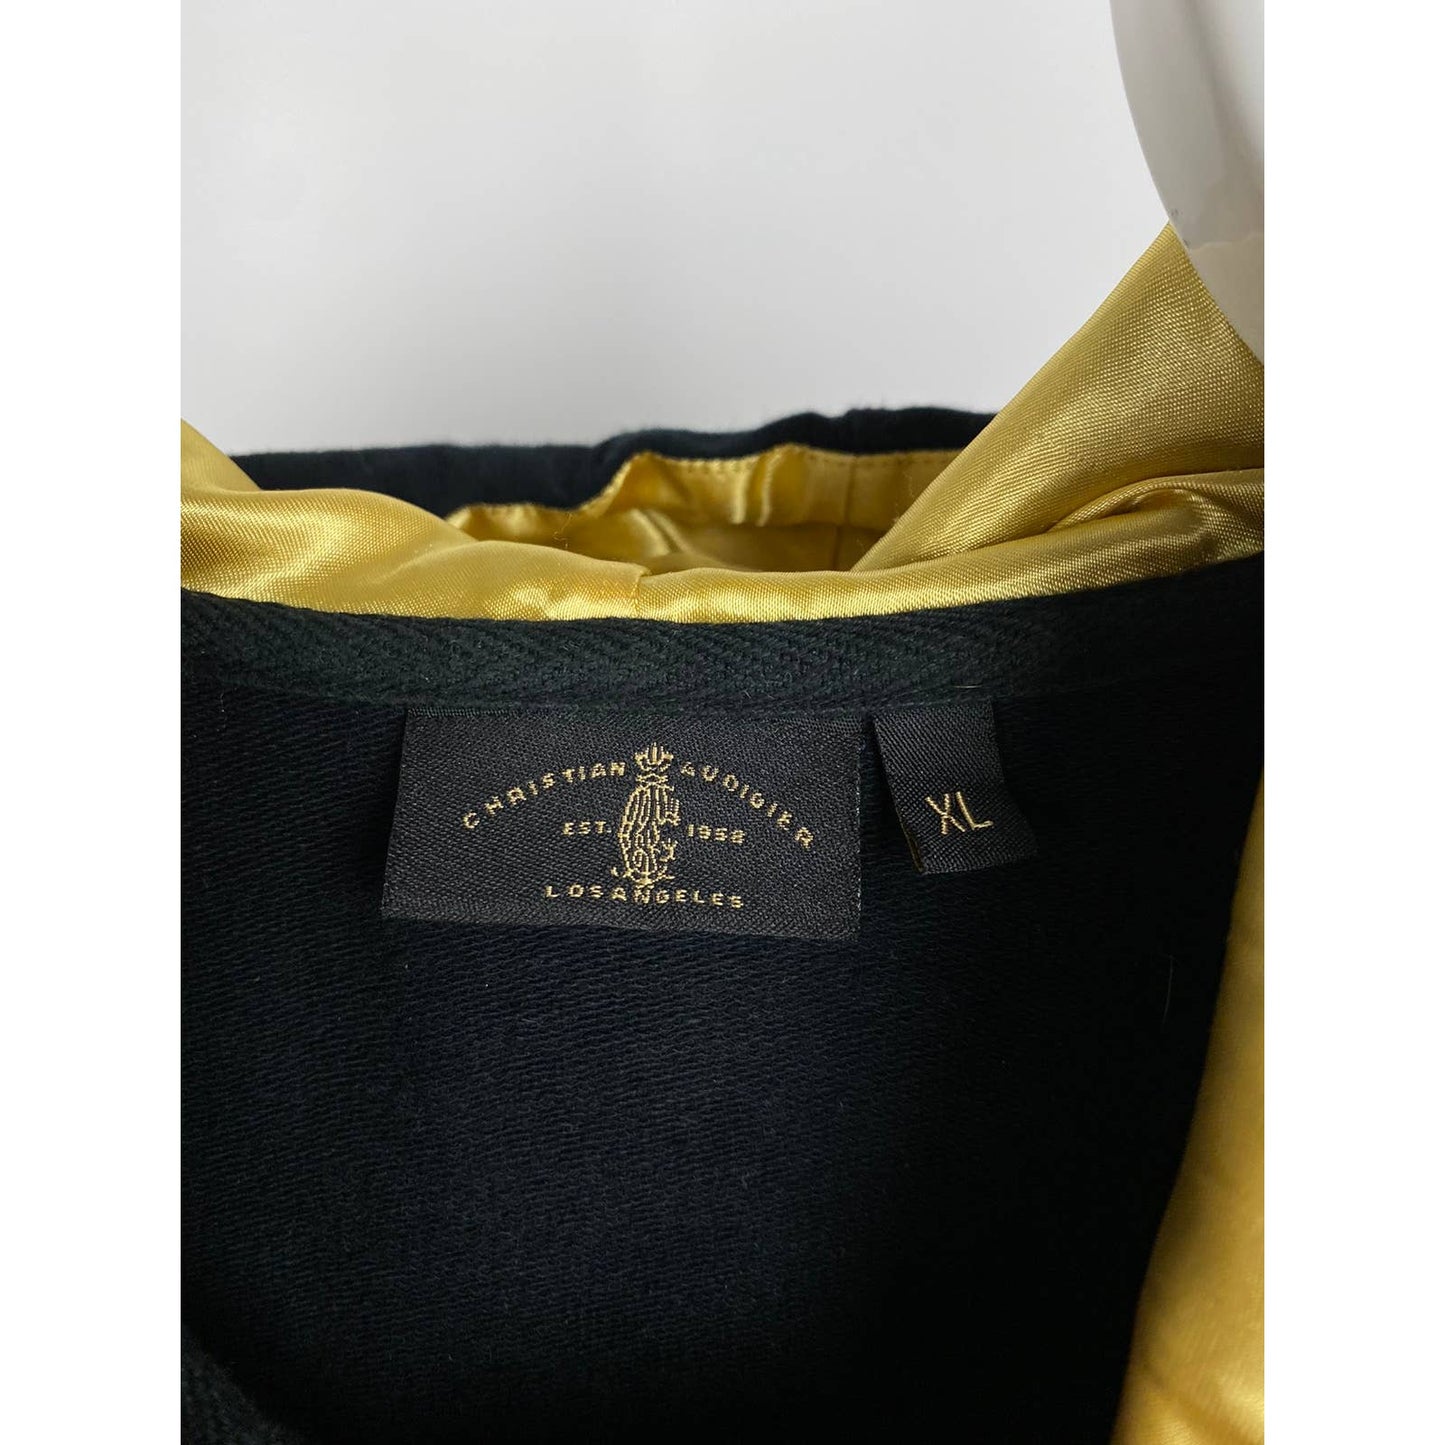 Ed Hardy Christian Audigier vintage black zip hoodie Y2K